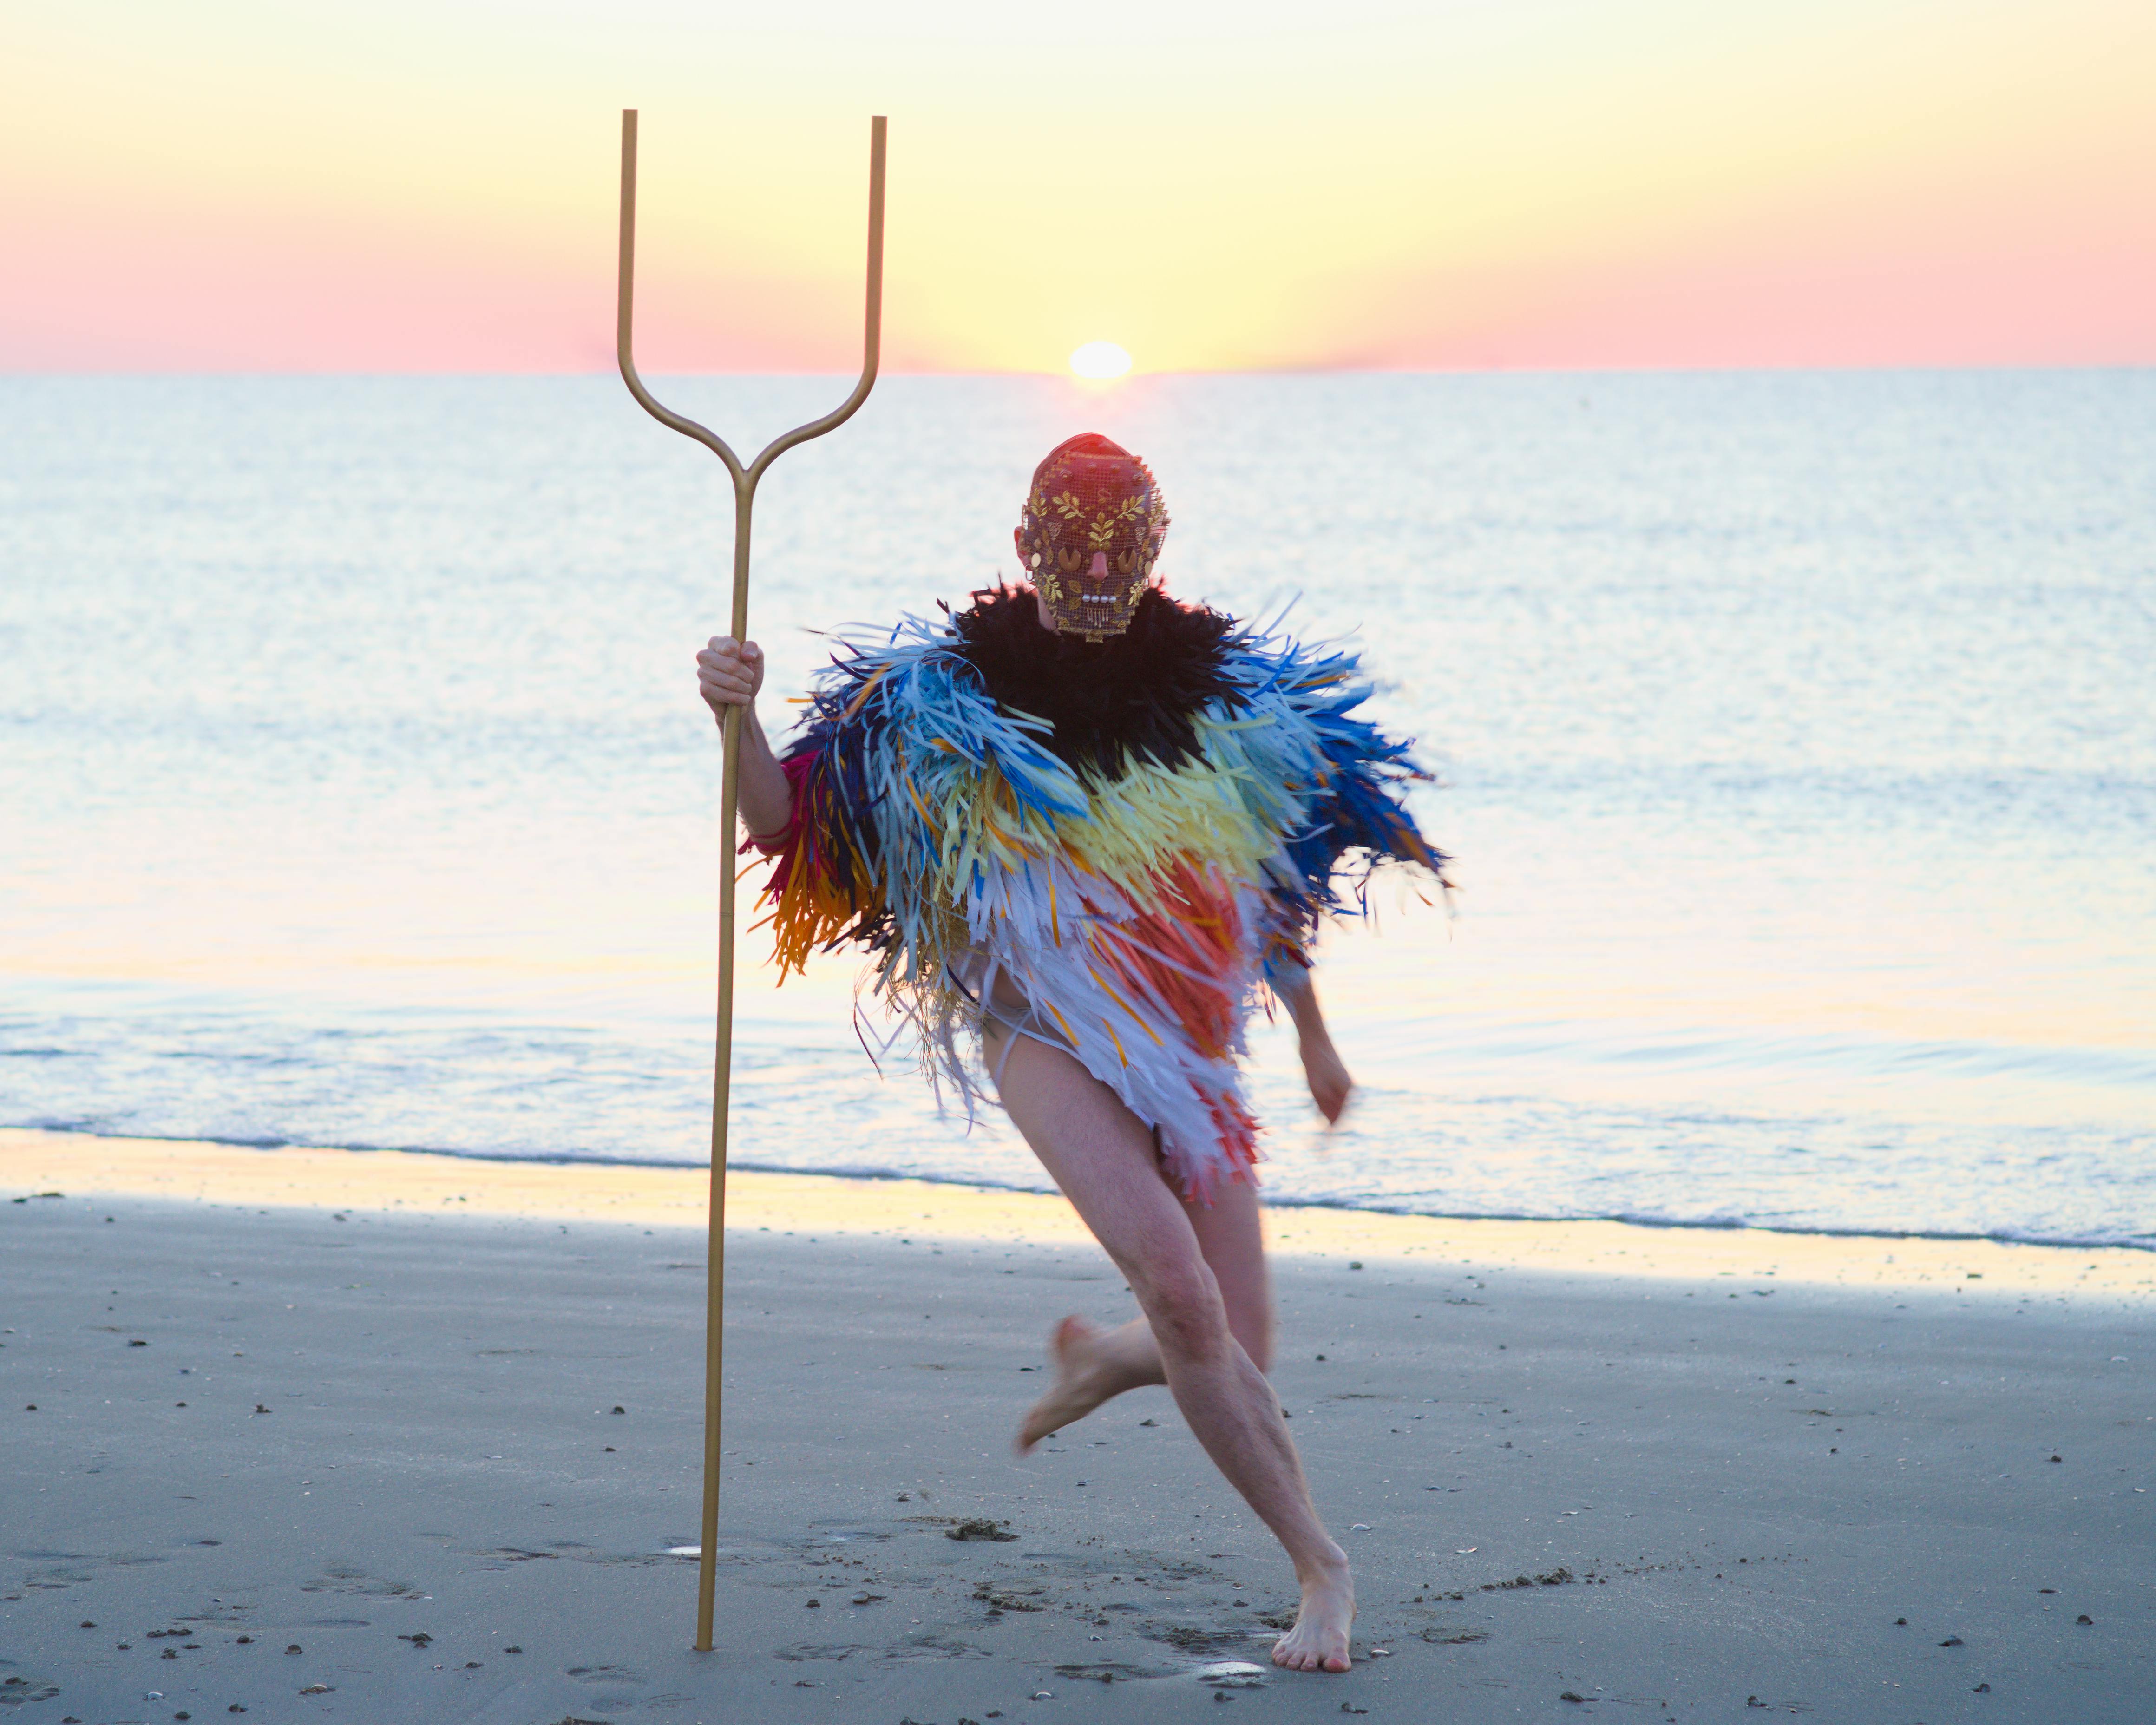 Una figura umana, con indosso una maschera e un poncho fatto di sottili striscioline colorate, corre su una spiaggia. In mano tiene una specie di forcone  a due punte.